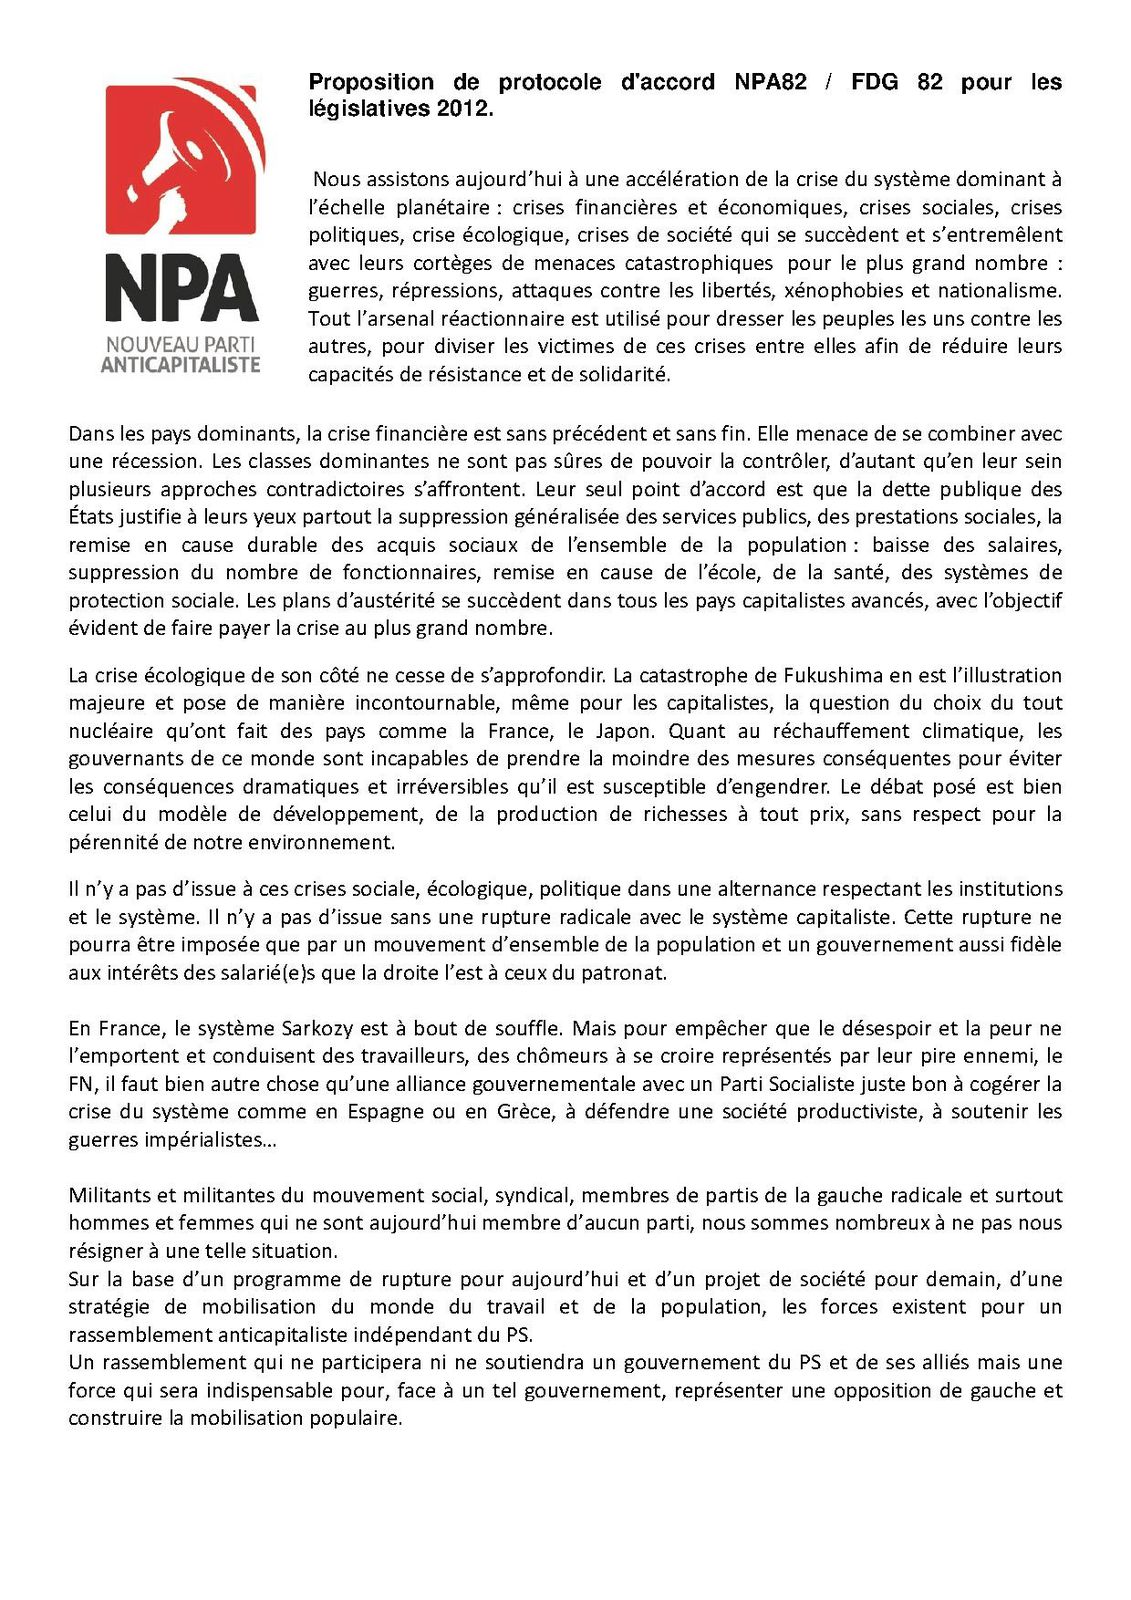 Proposition-d-accord-NPA-82-FDG-82-pour-les-legislatives-2.jpg